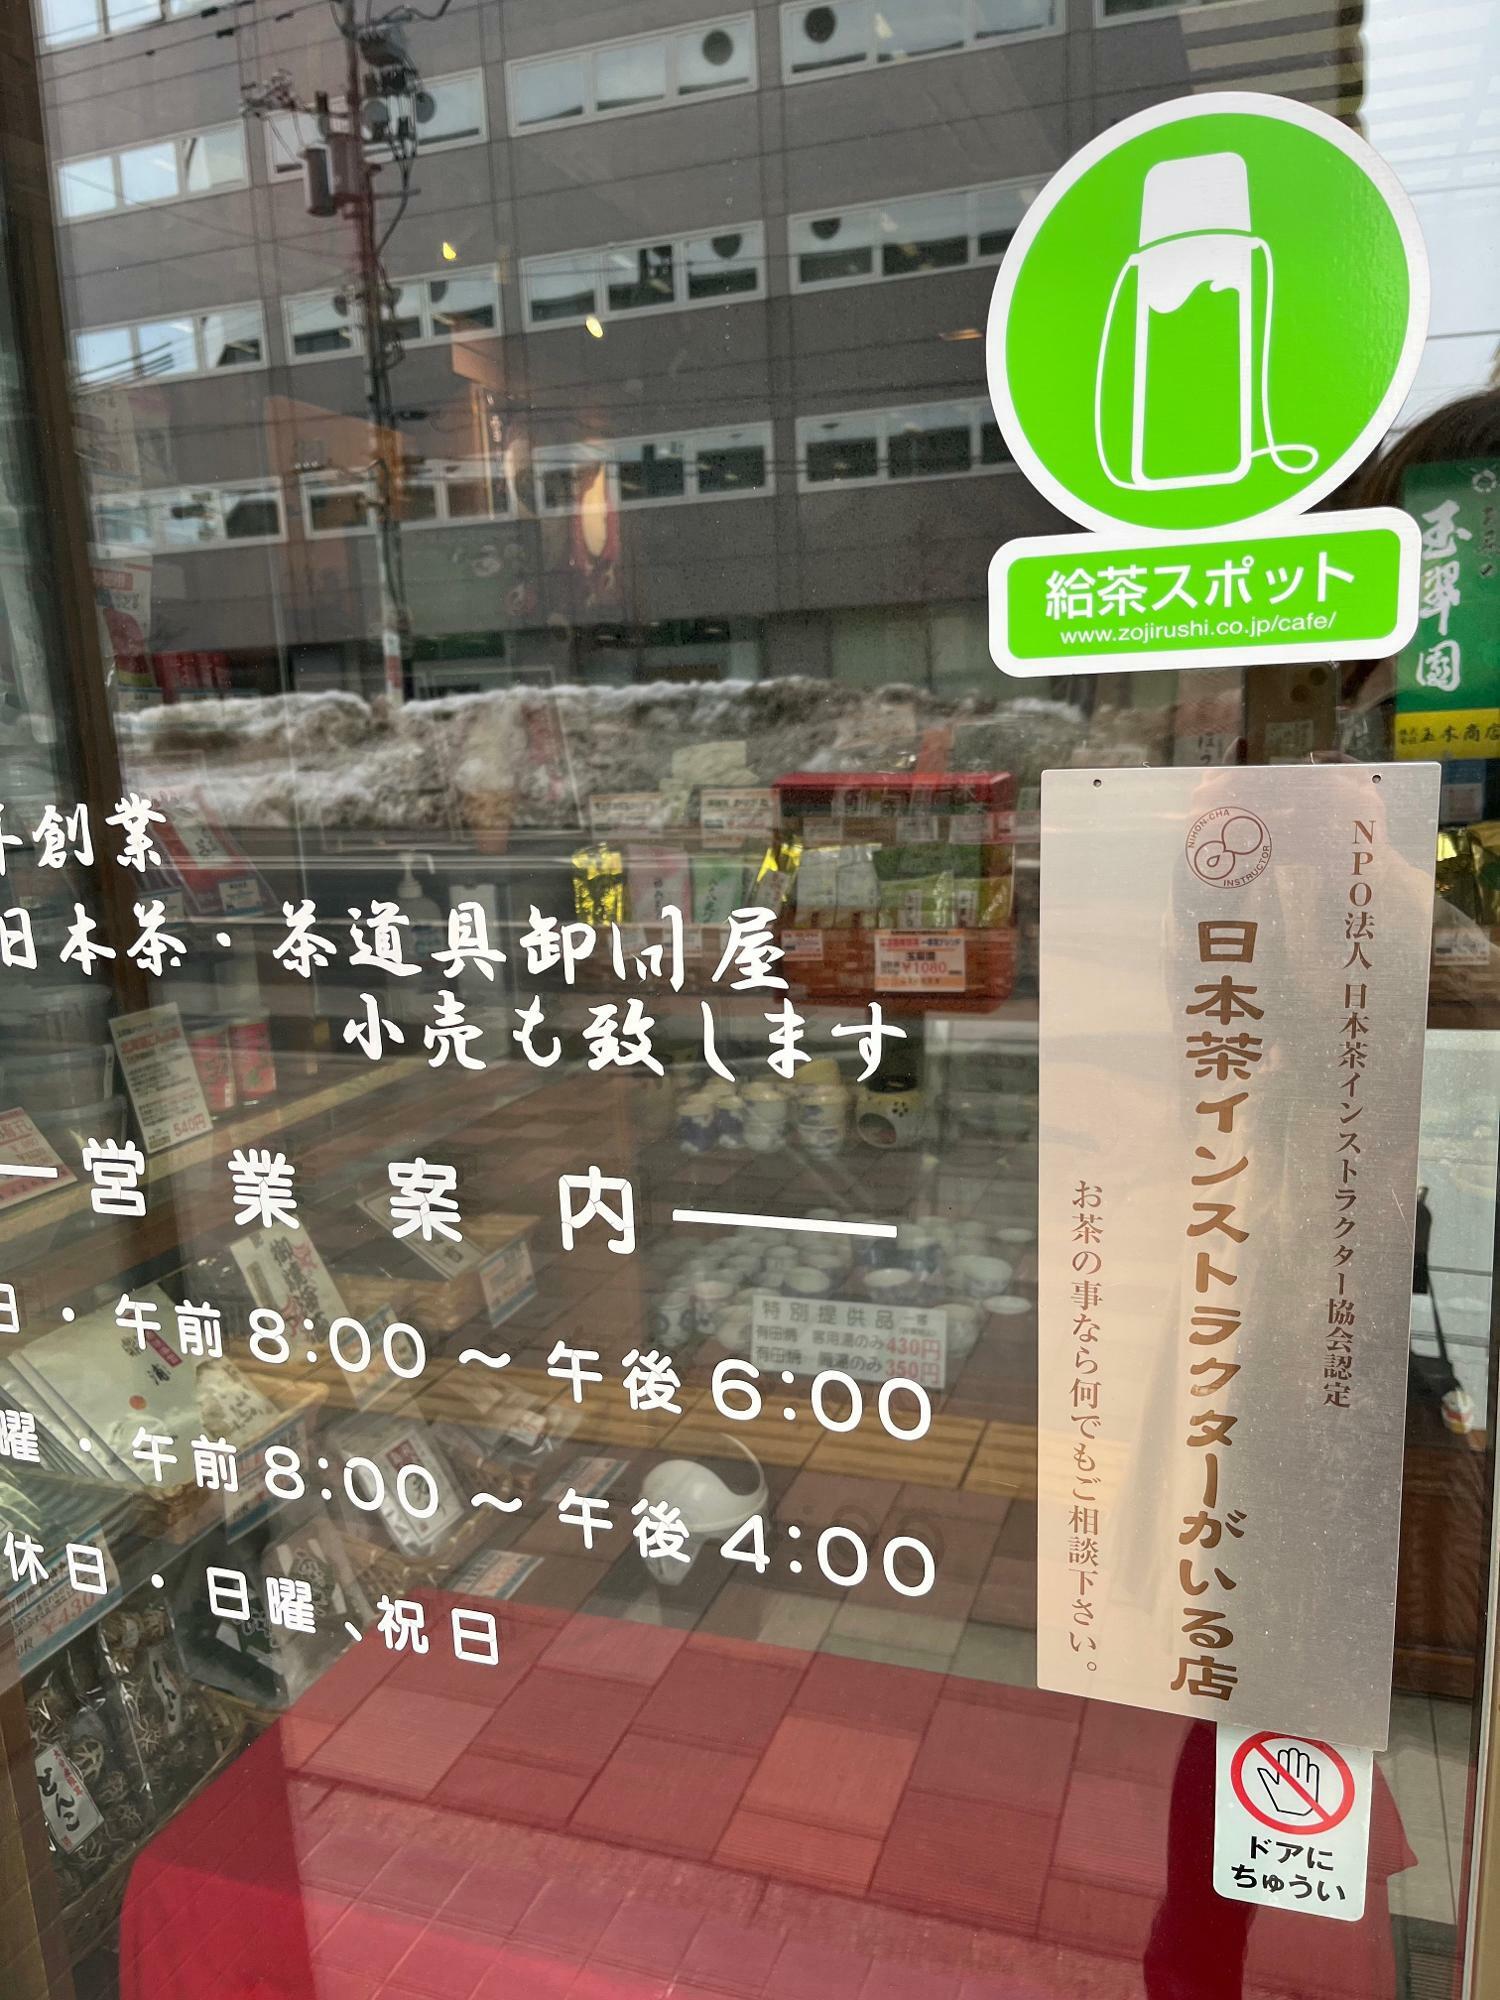 「日本茶インストラクターがいる店」の上に「給茶スポット」という文字が…